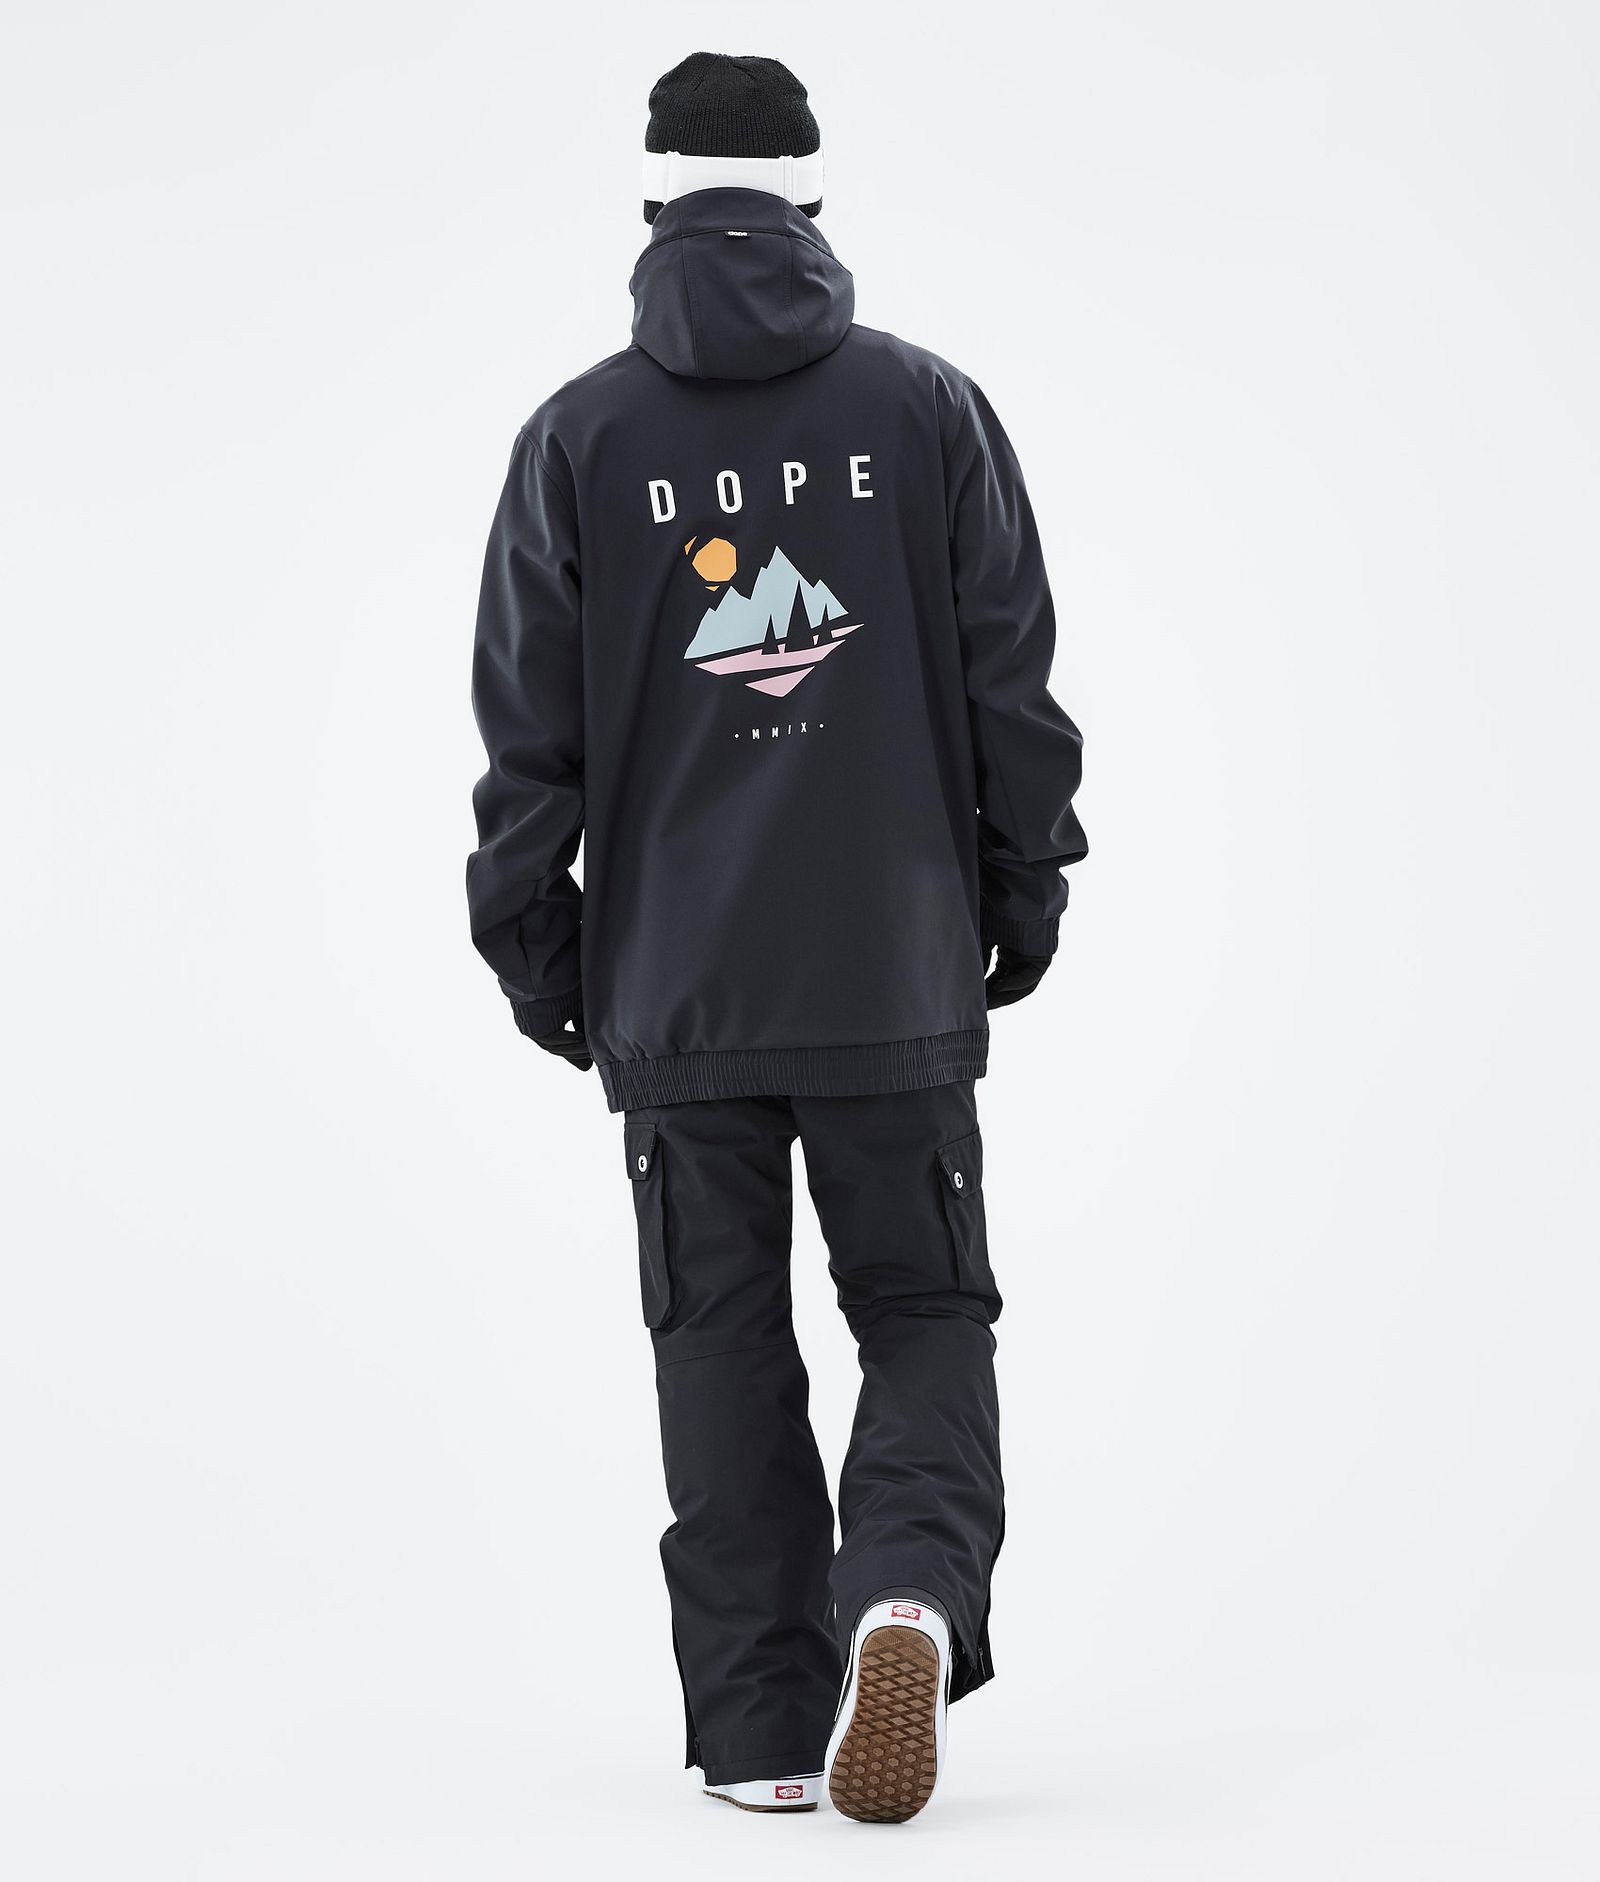 Dope Yeti 2022 Snowboard Jacket Men Pine Black